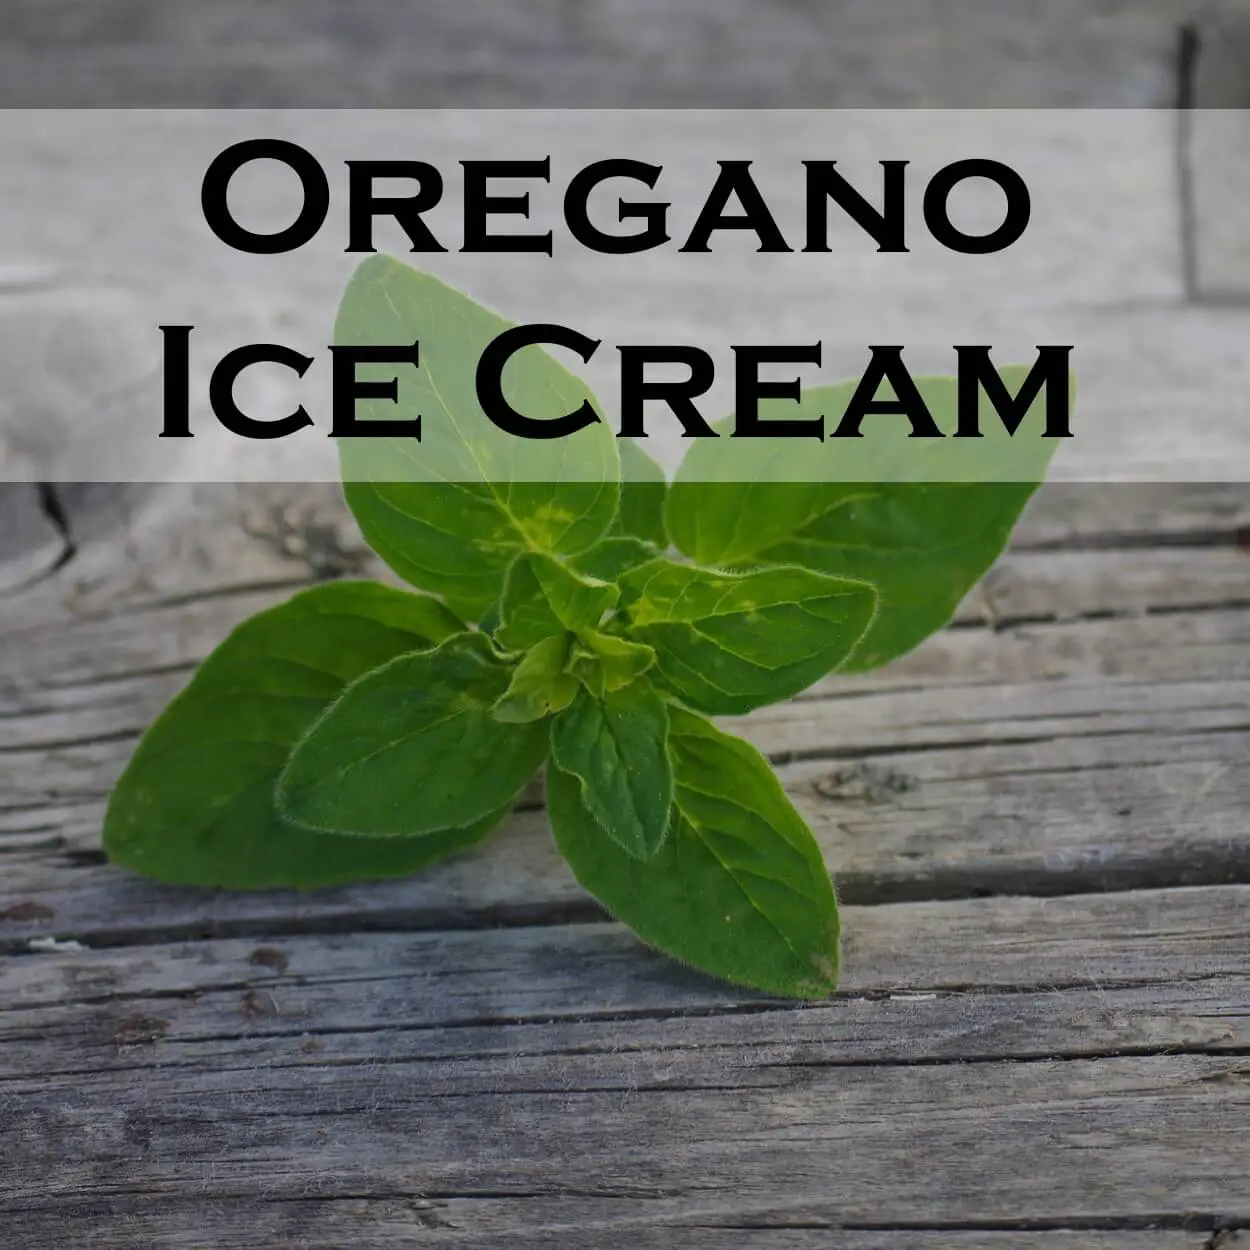 Oregano Ice Cream